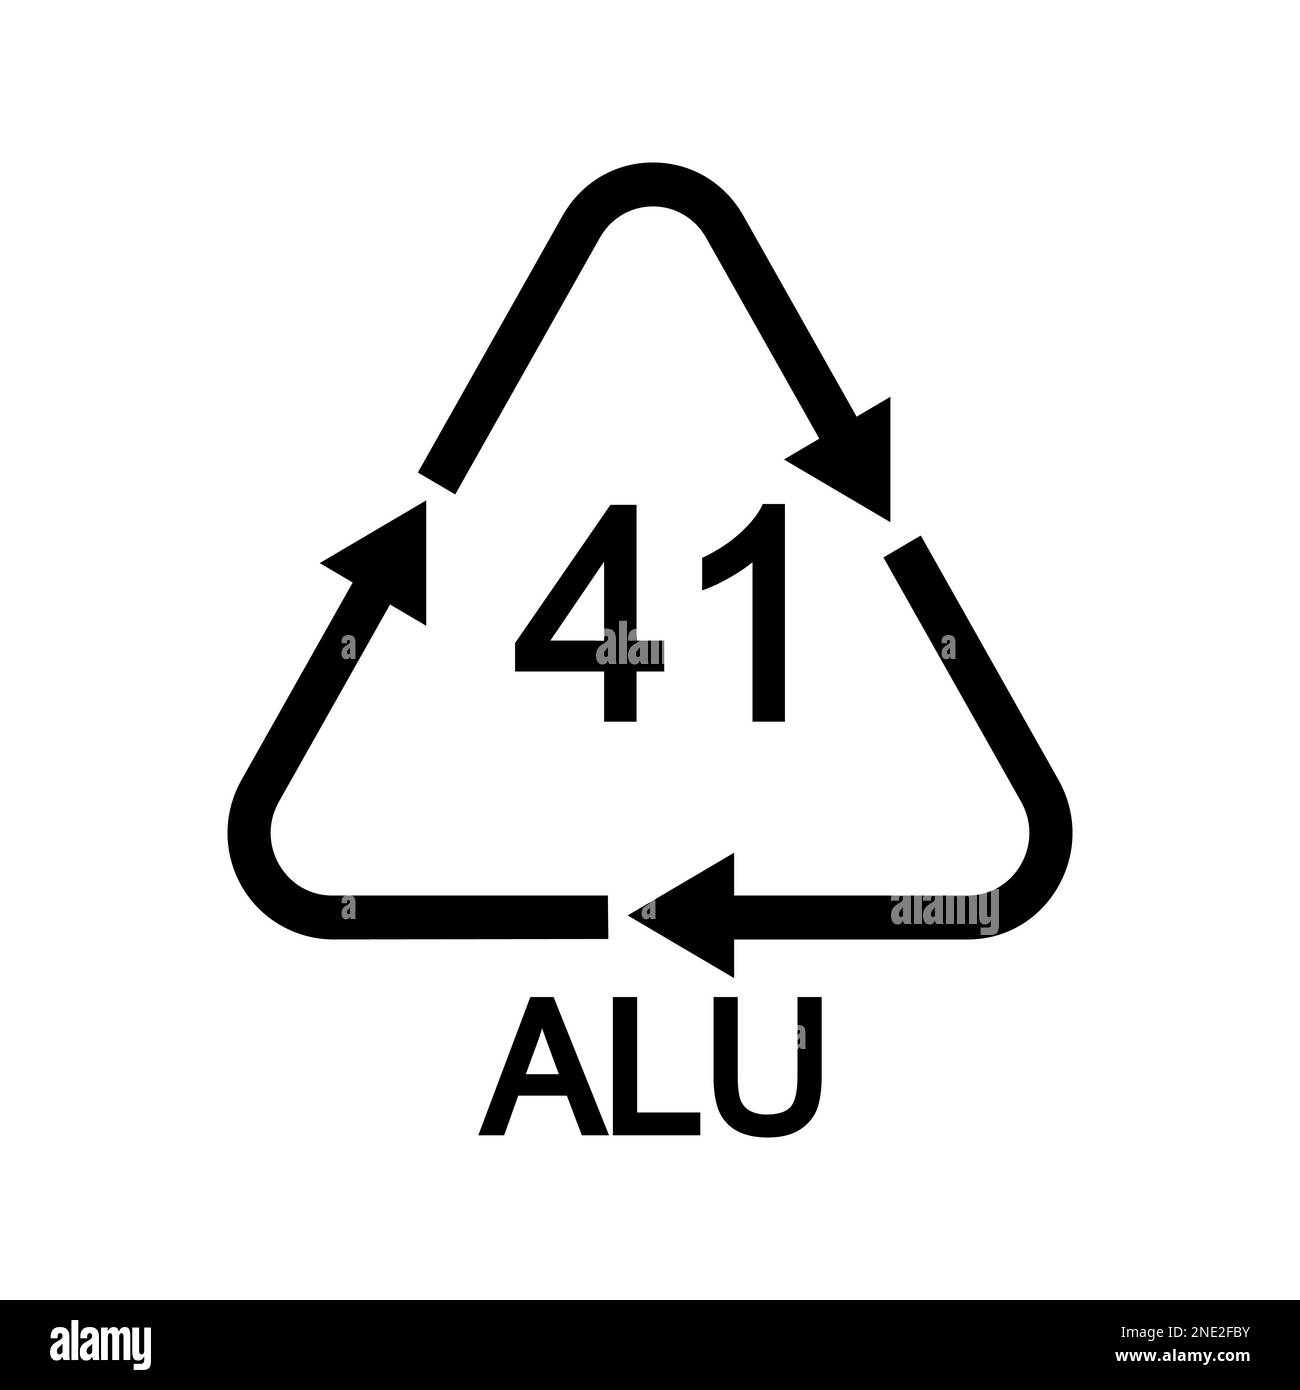 Panneau de recyclage ALU 41 de forme triangulaire avec flèches. Icône réutilisable en aluminium isolée sur fond blanc. Concept de protection de l'environnement Illustration de Vecteur